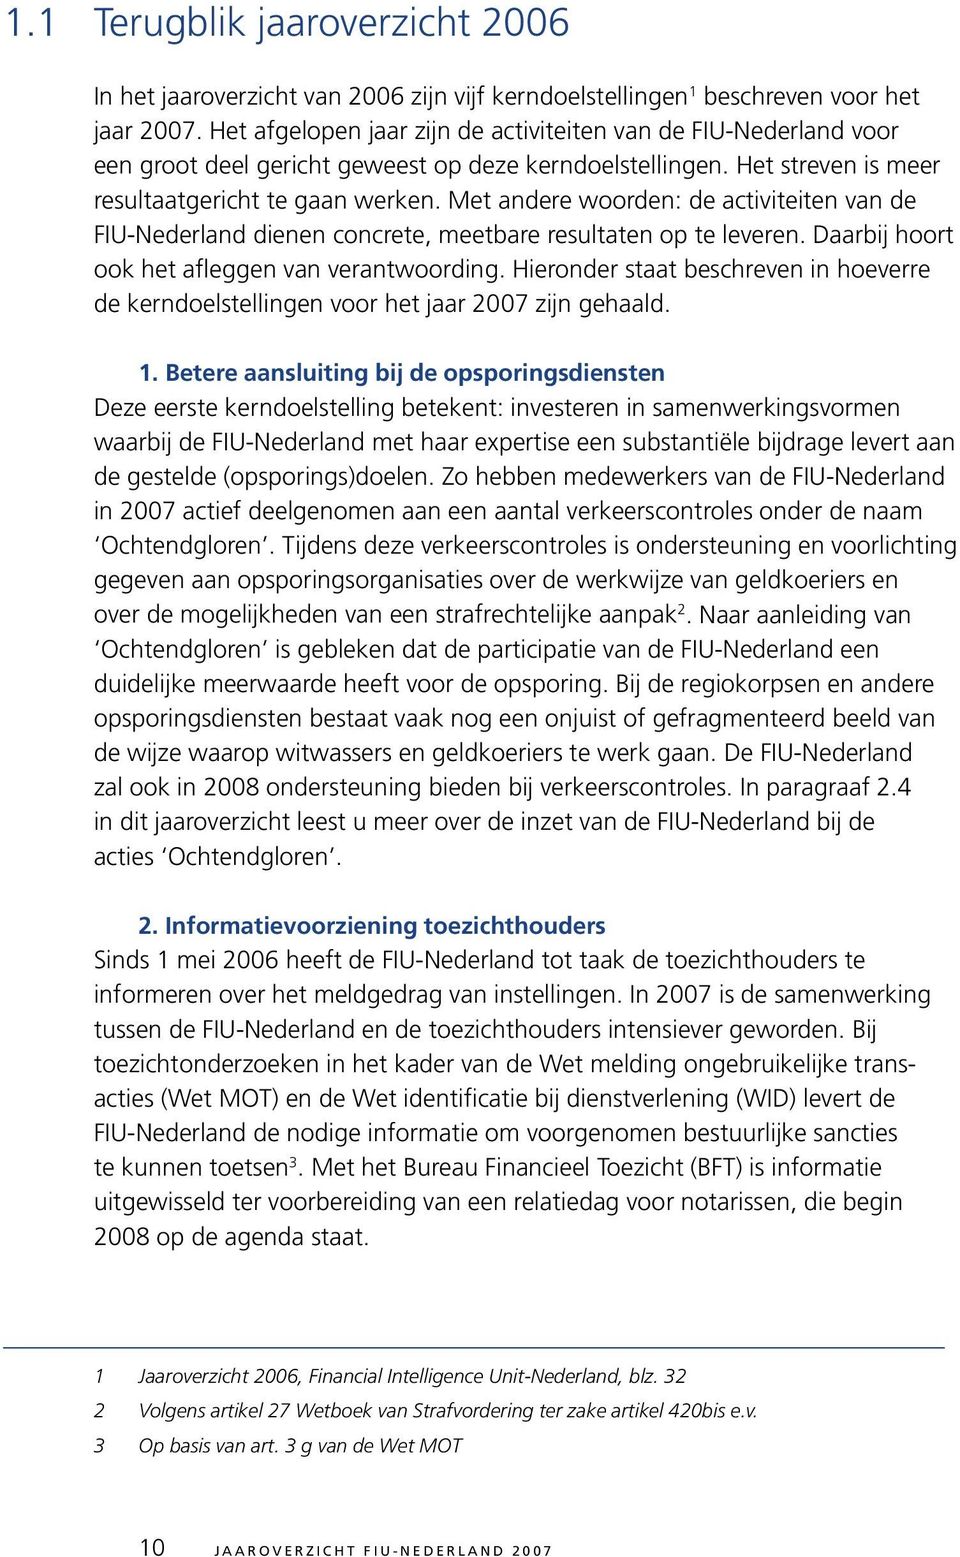 Met andere woorden: de activiteiten van de FIU-Nederland dienen concrete, meetbare resultaten op te leveren. Daarbij hoort ook het afleggen van verantwoording.